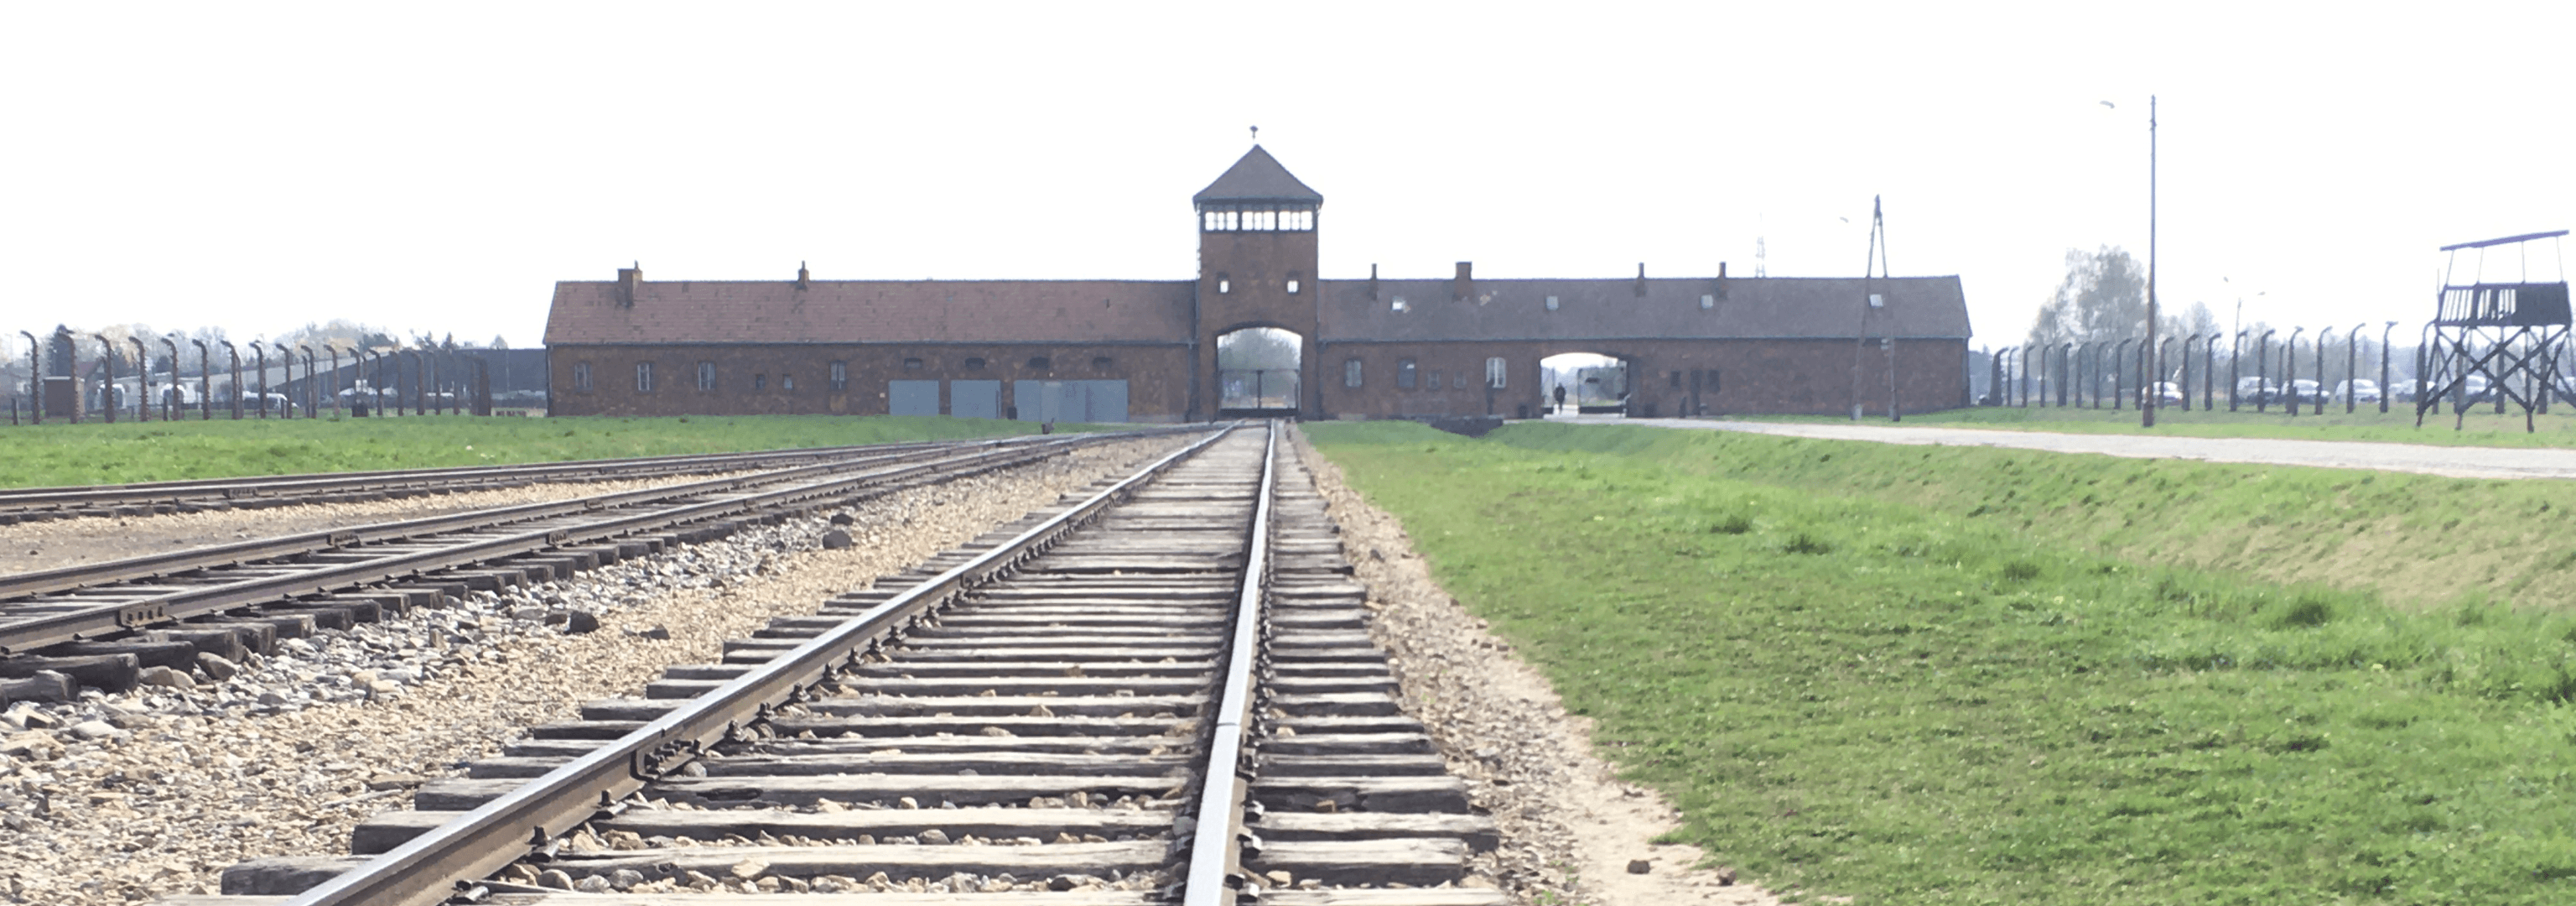 Holocaustgedenktag mit Avigdor Neumann (Auschwitzüberlebender)